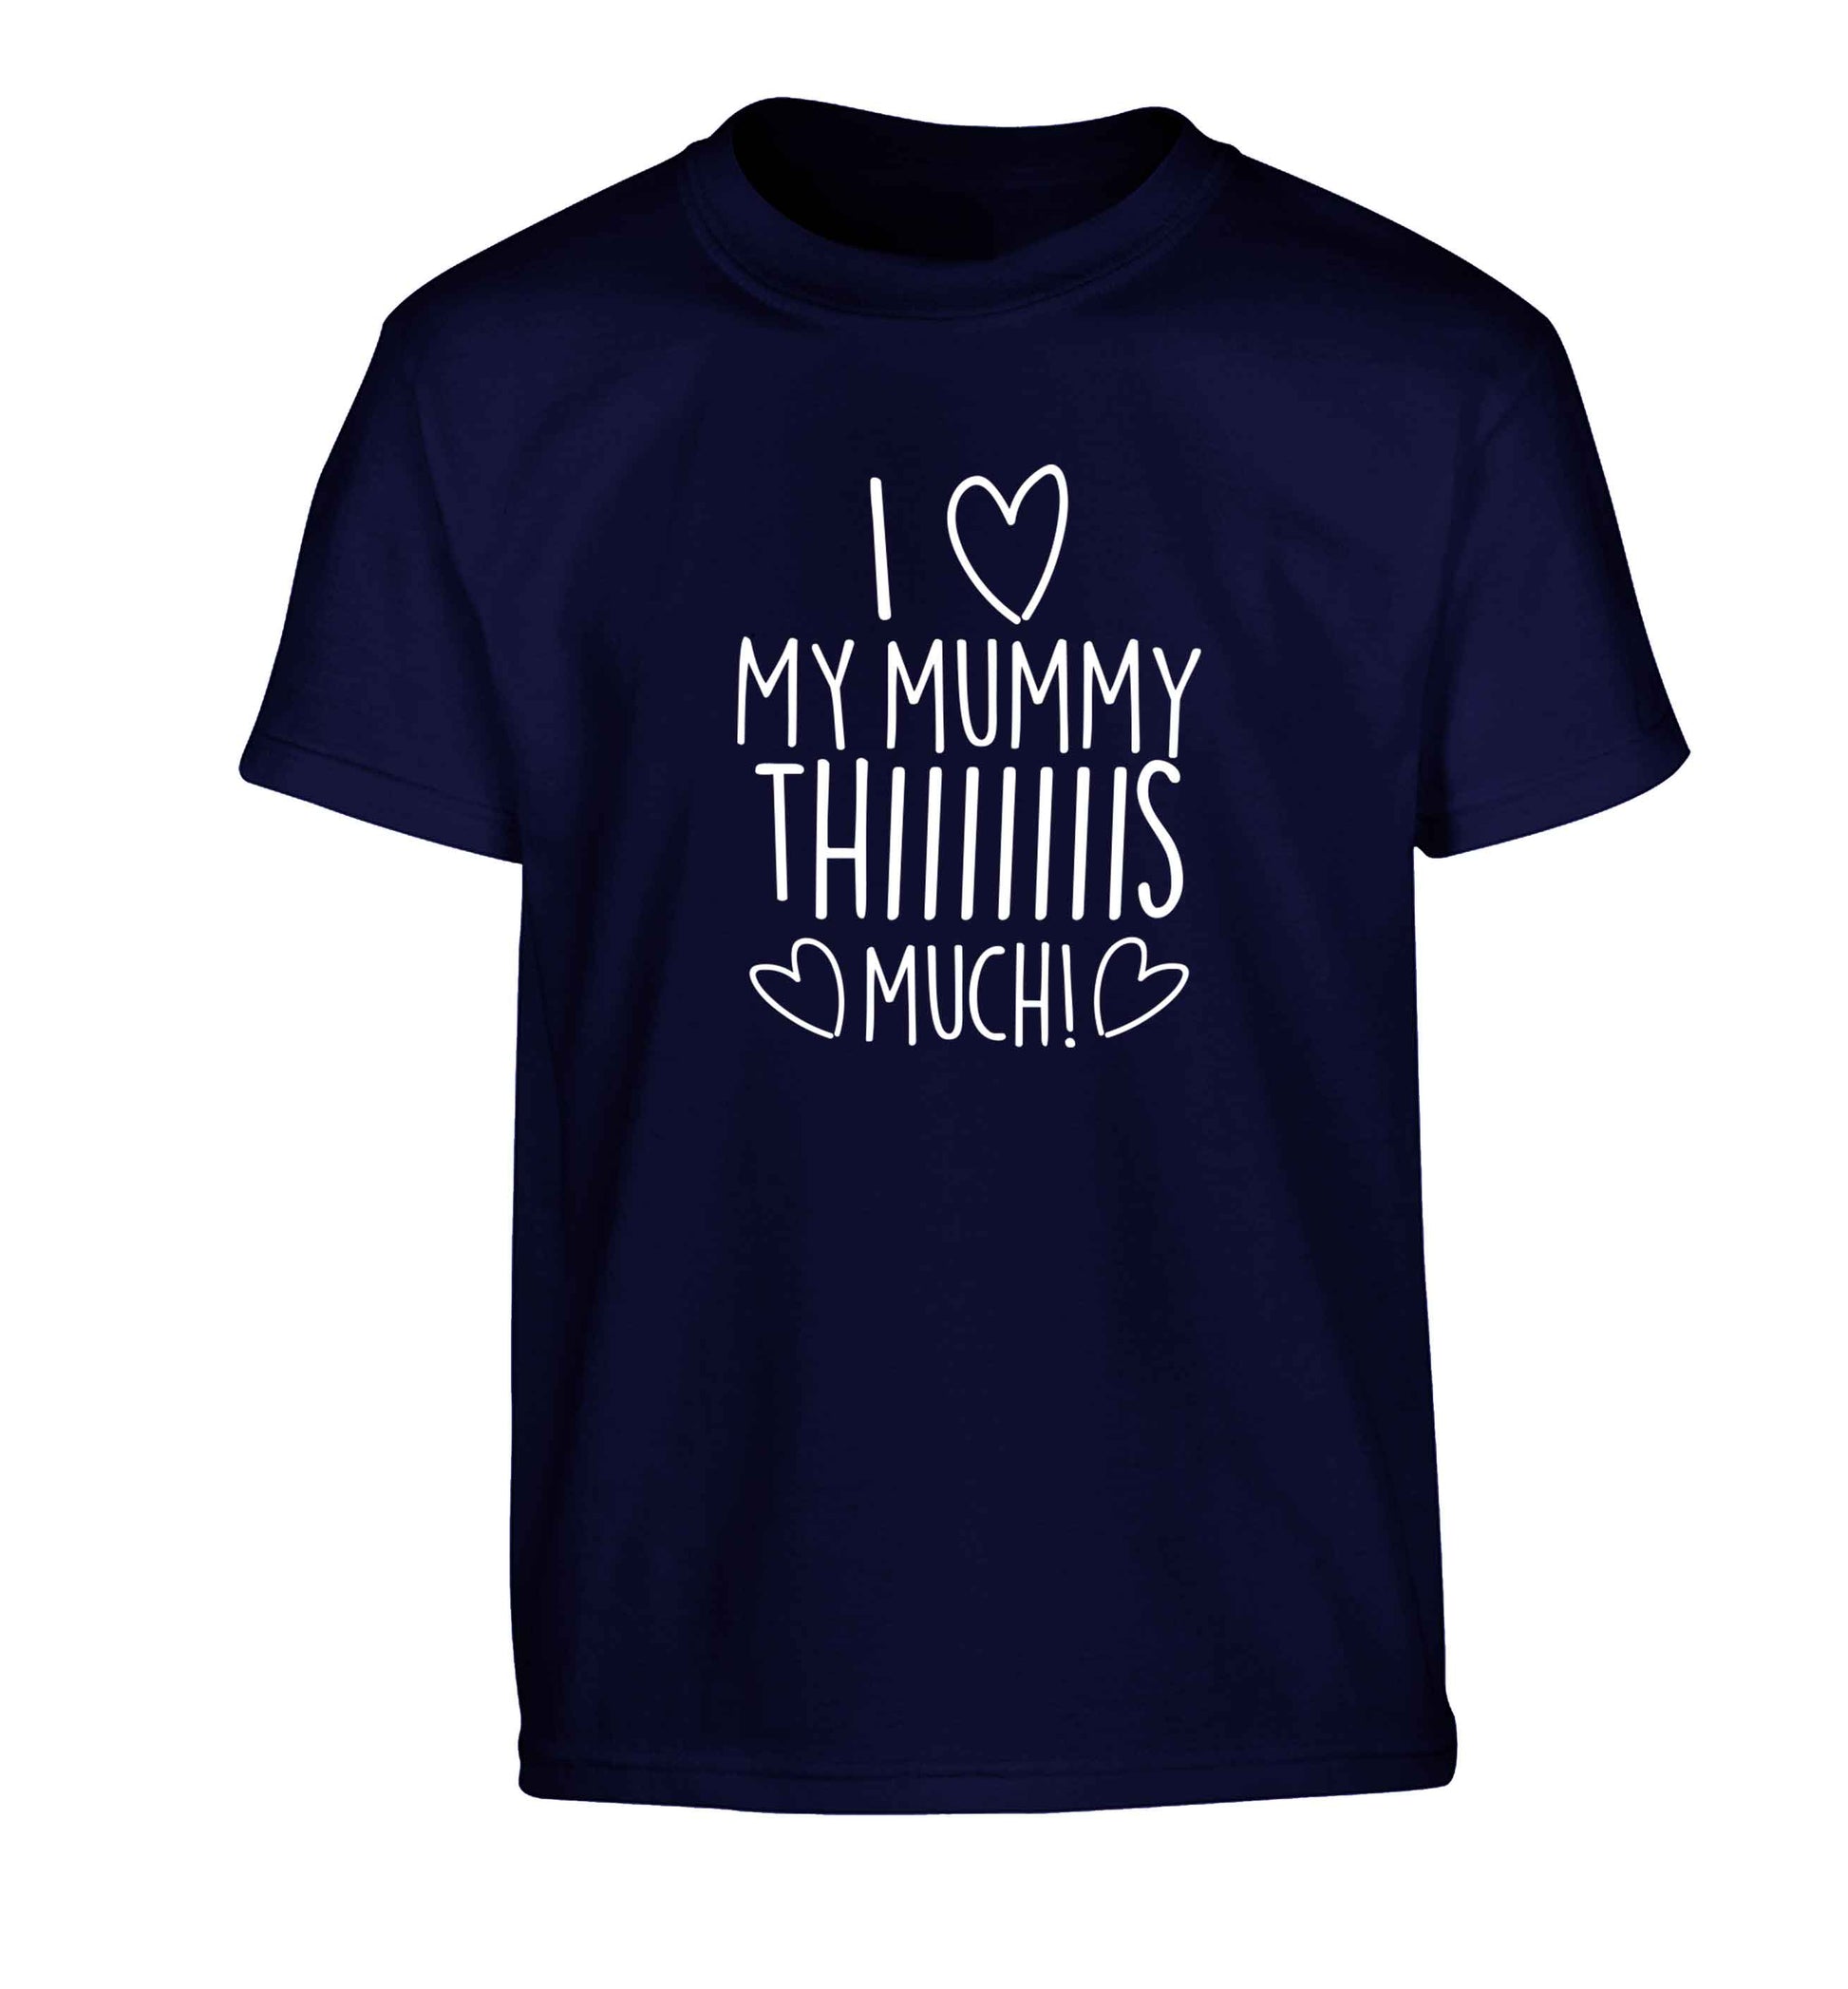 I love my mummy thiiiiis much! Children's navy Tshirt 12-13 Years